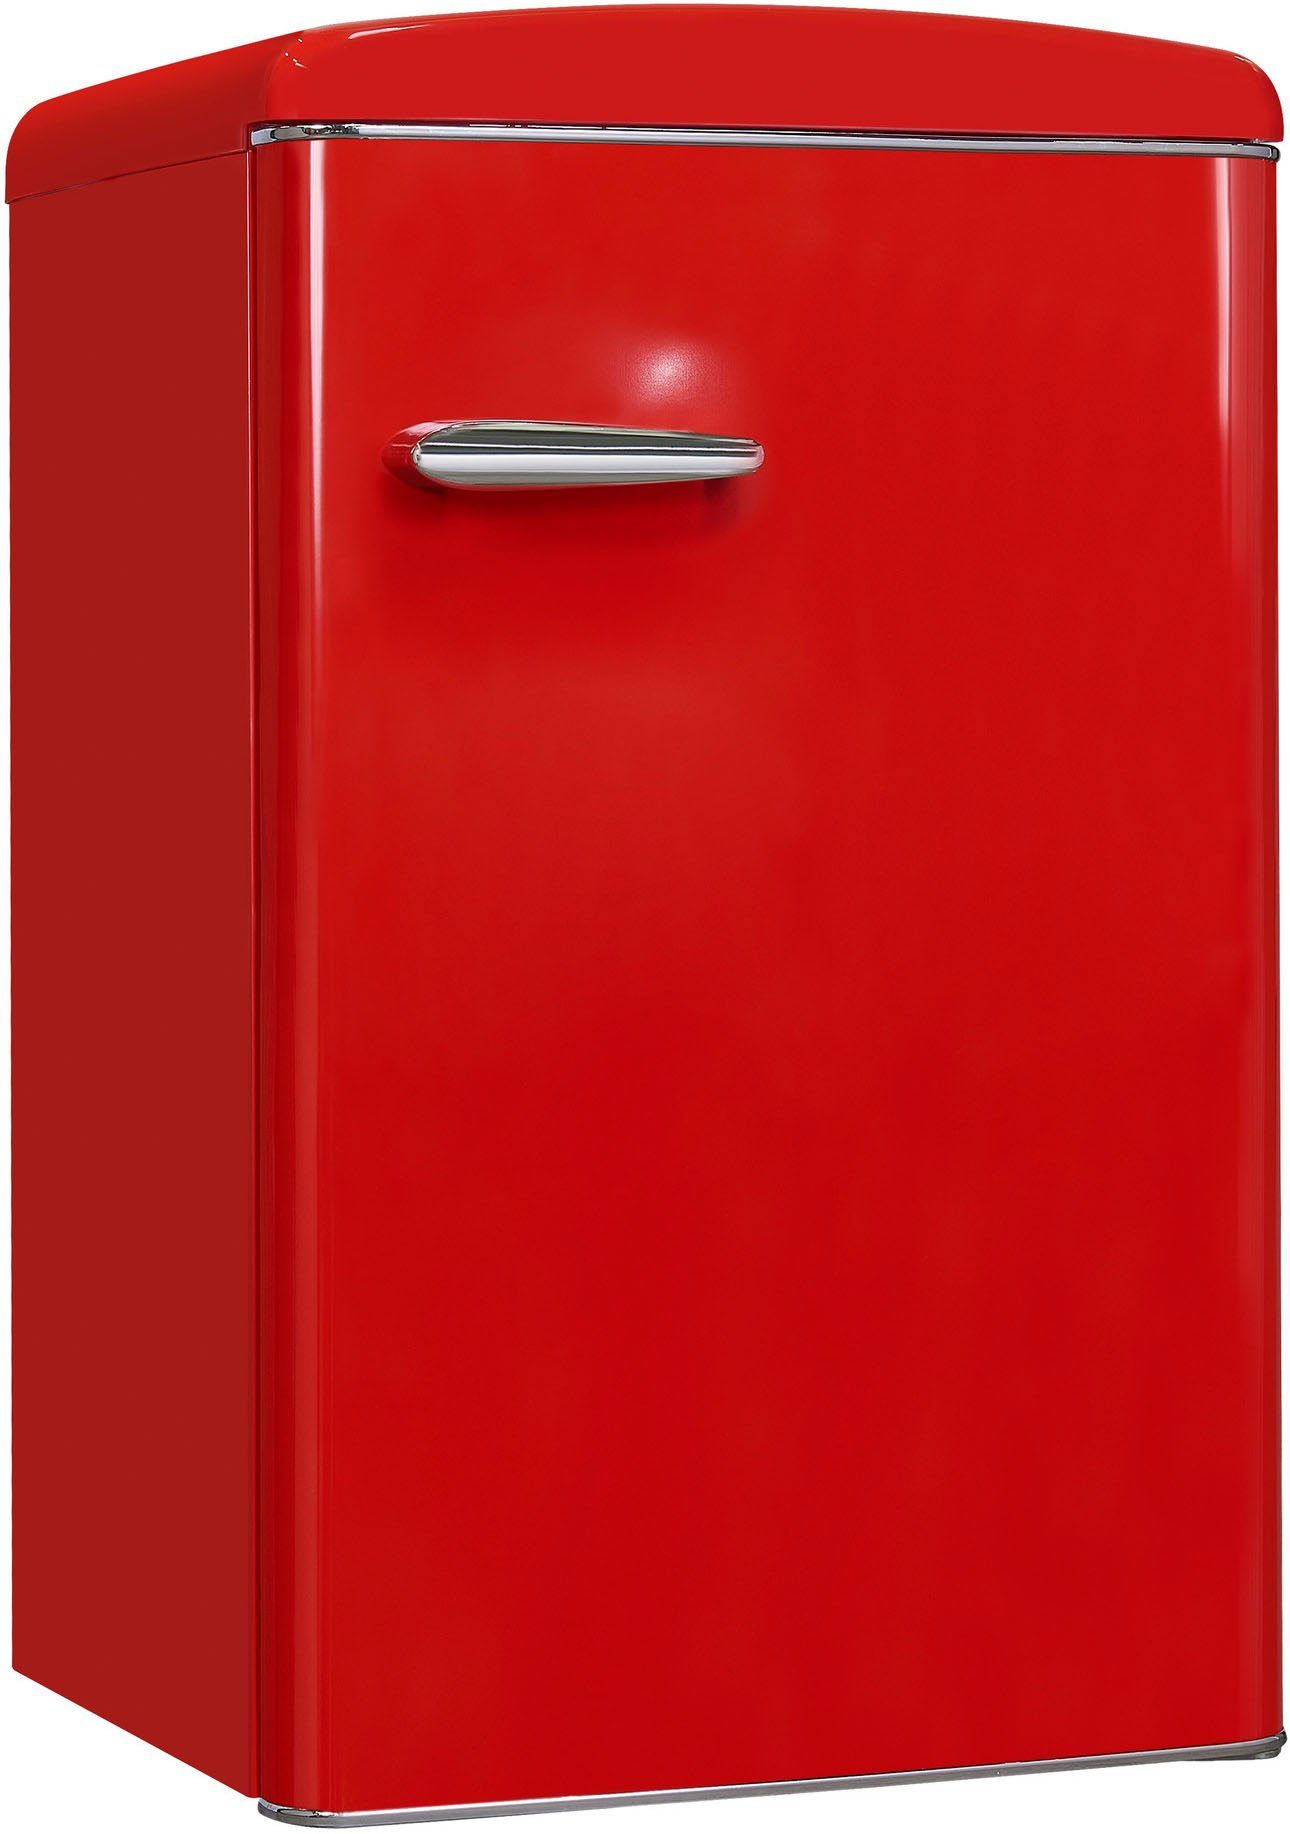 exquisit Kühlschrank cm cm hoch, RKS120-V-H-160F breit 55 89,5 rot